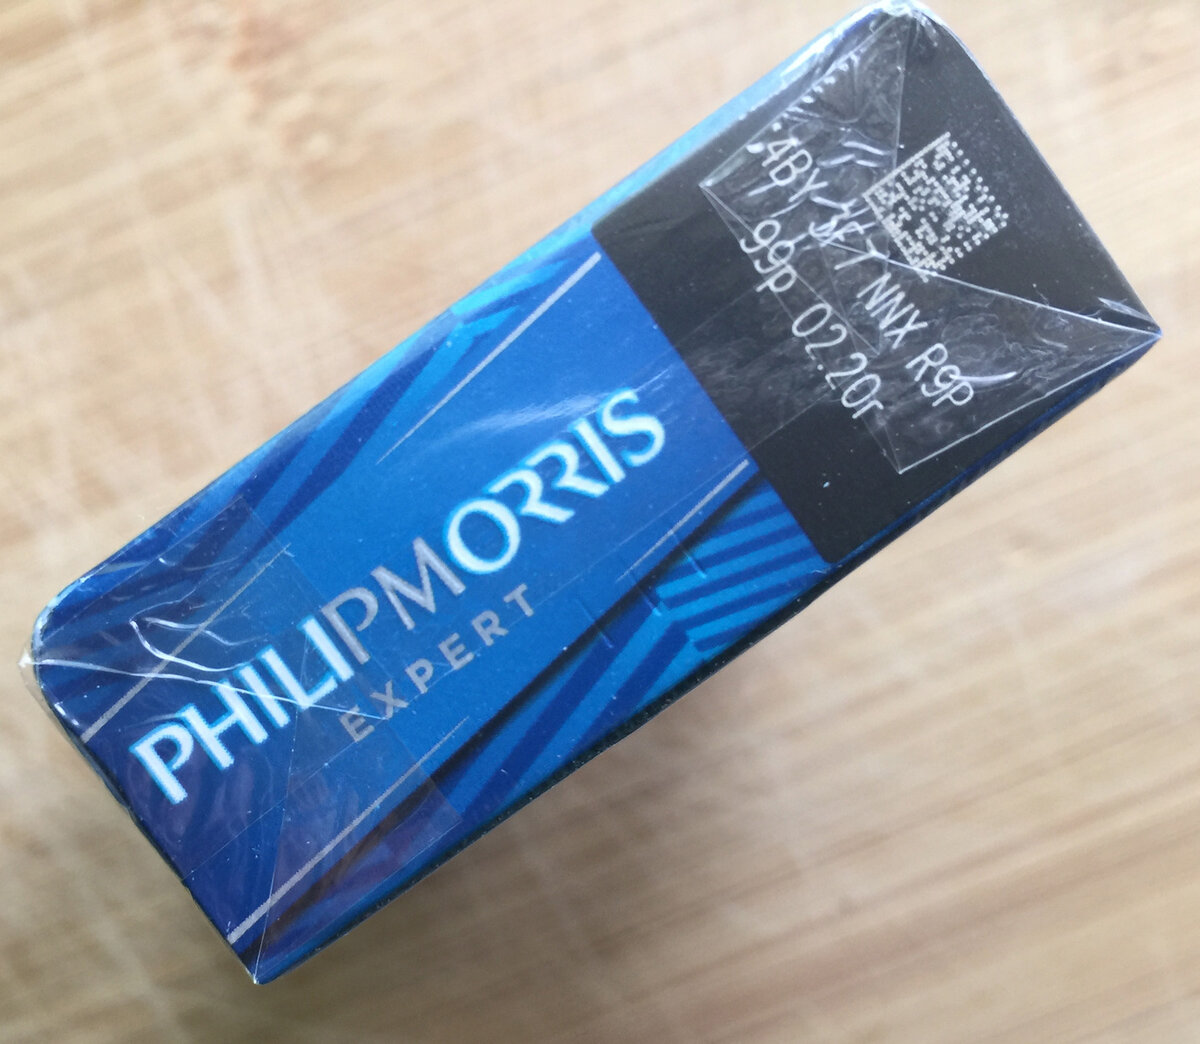 Моррис сигареты компакт. Филип Моррис компакт эксперт (Philip Morris Compact Expert). Philip Morris сигареты компакт эксперт МРЦ 115. Сигареты Philip Morris Signature Expert. Филипс Морис эксперт сигареты.